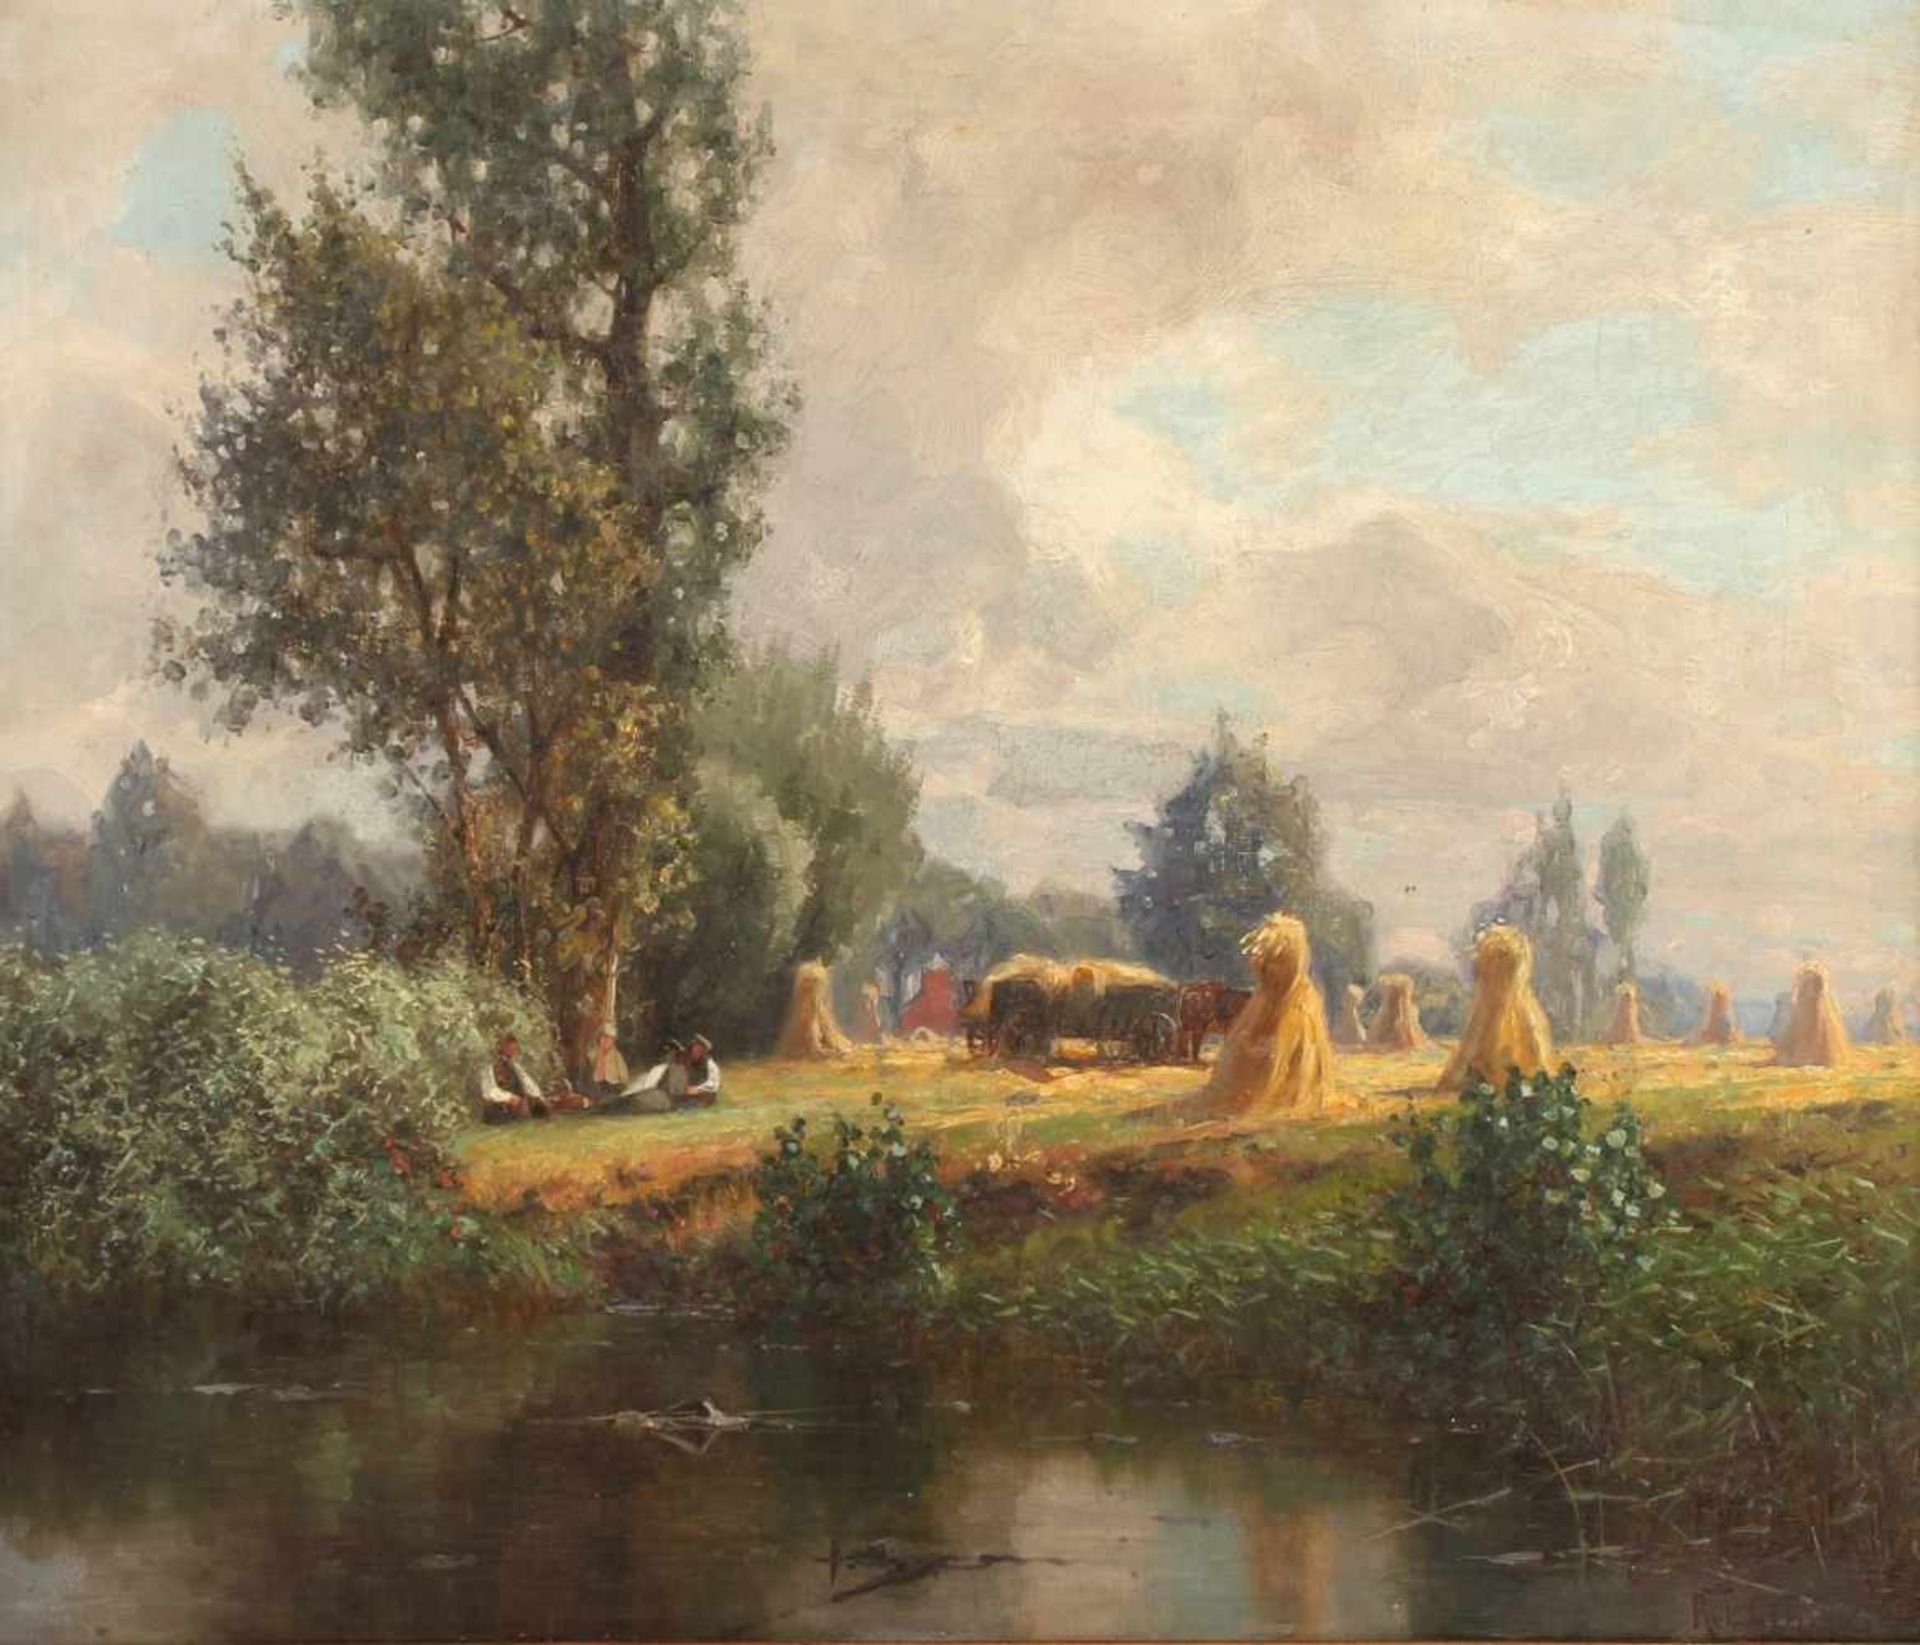 GLEICH, Robert (tätig 1895-1900), "Landschaft mit Kornschnittern", Öl/Lwd., 39,5 x 45,5, unten